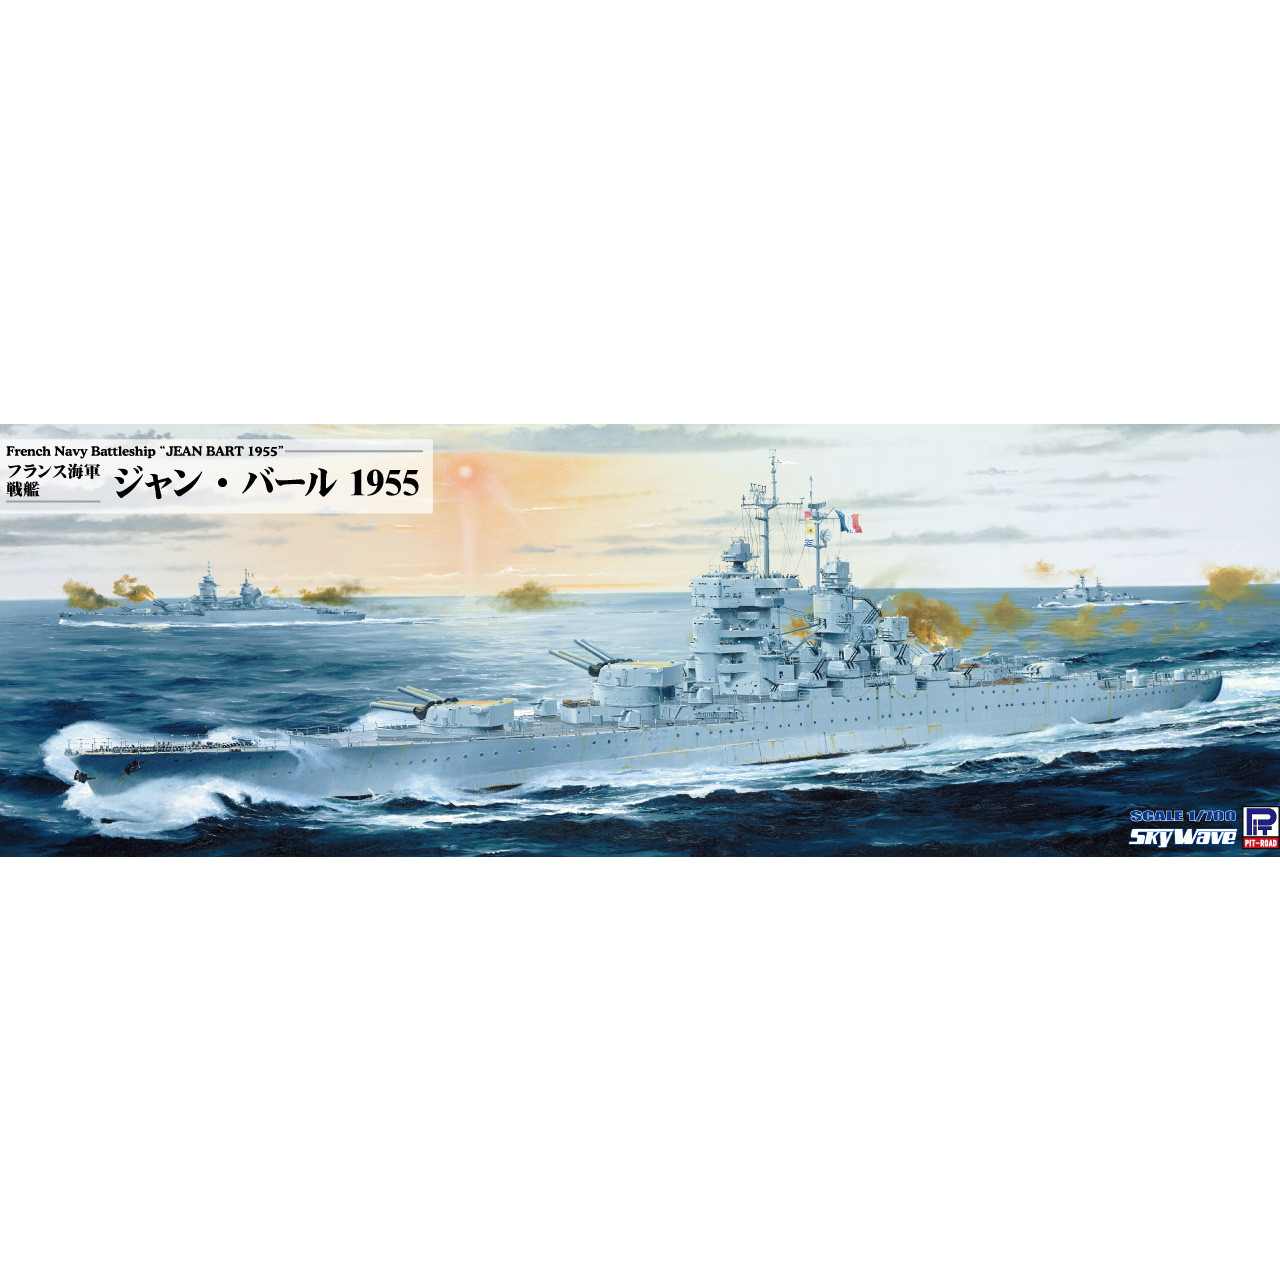 【新製品】W251 1/700 フランス海軍 戦艦 ジャン・バール 1955